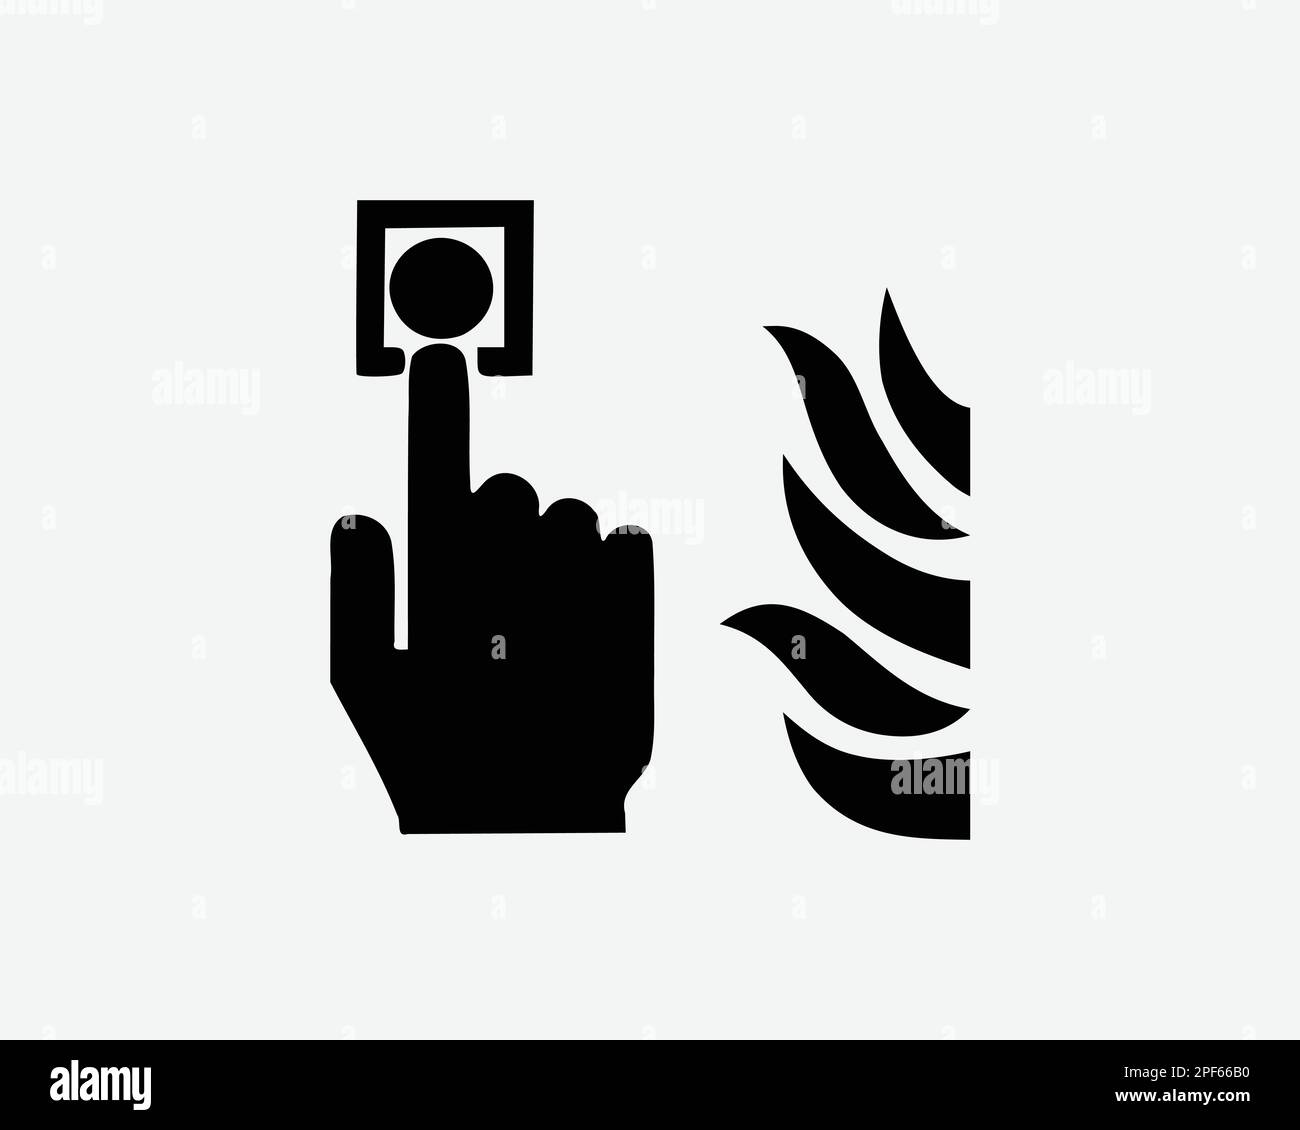 Feueralarm-Taste Drücken Sie Den Notruf Hilfe Schwarzweiß Silhouette Zeichen Symbol Clipart Grafik Bildmaterial Piktogramm Illustration Vektor Stock Vektor